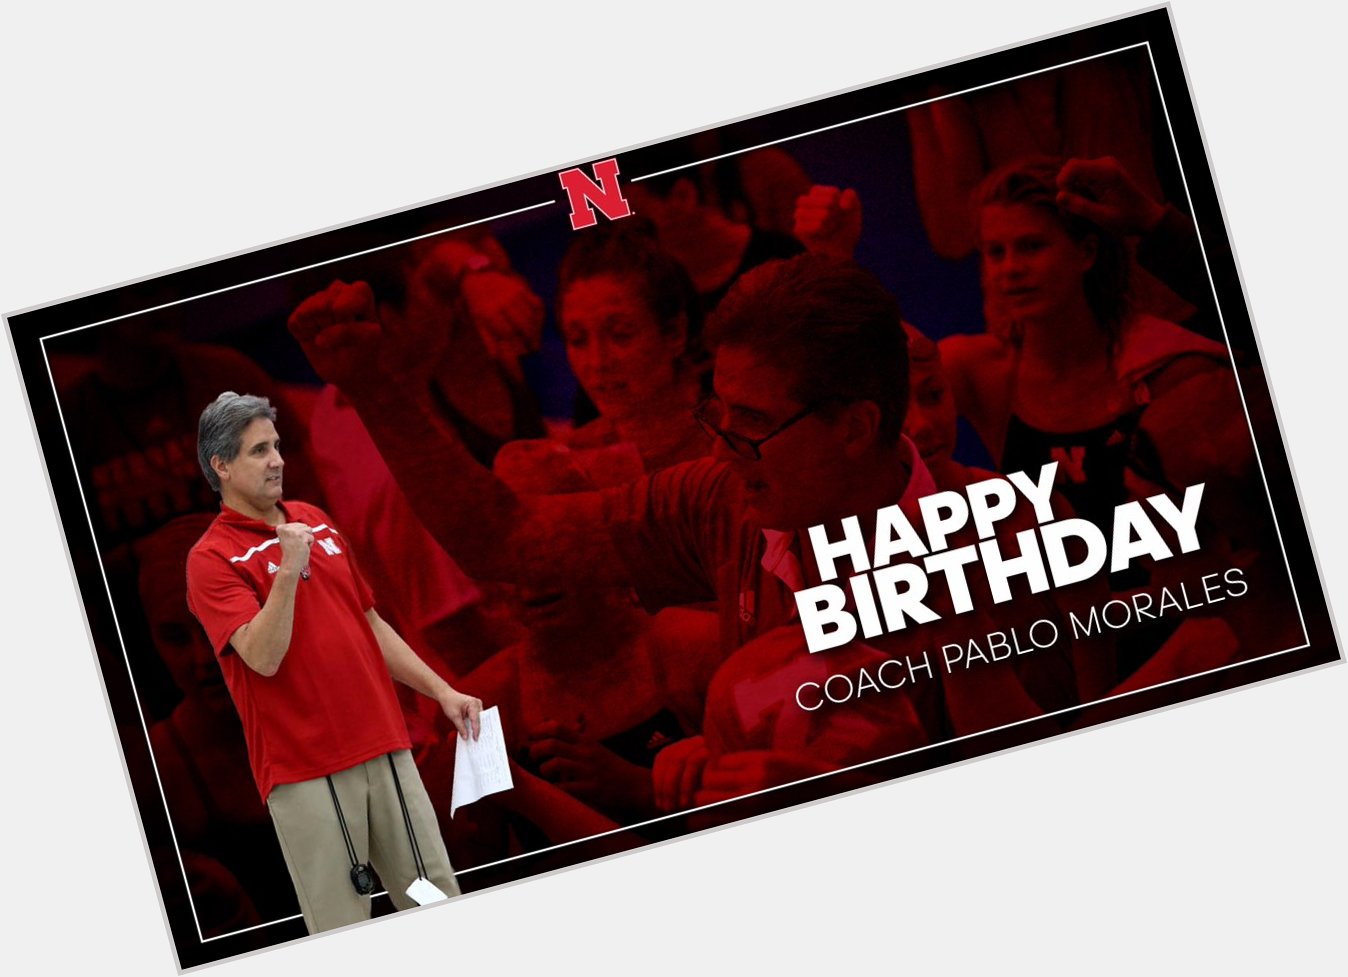  help us wish head coach Pablo Morales a happy birthday!      :  